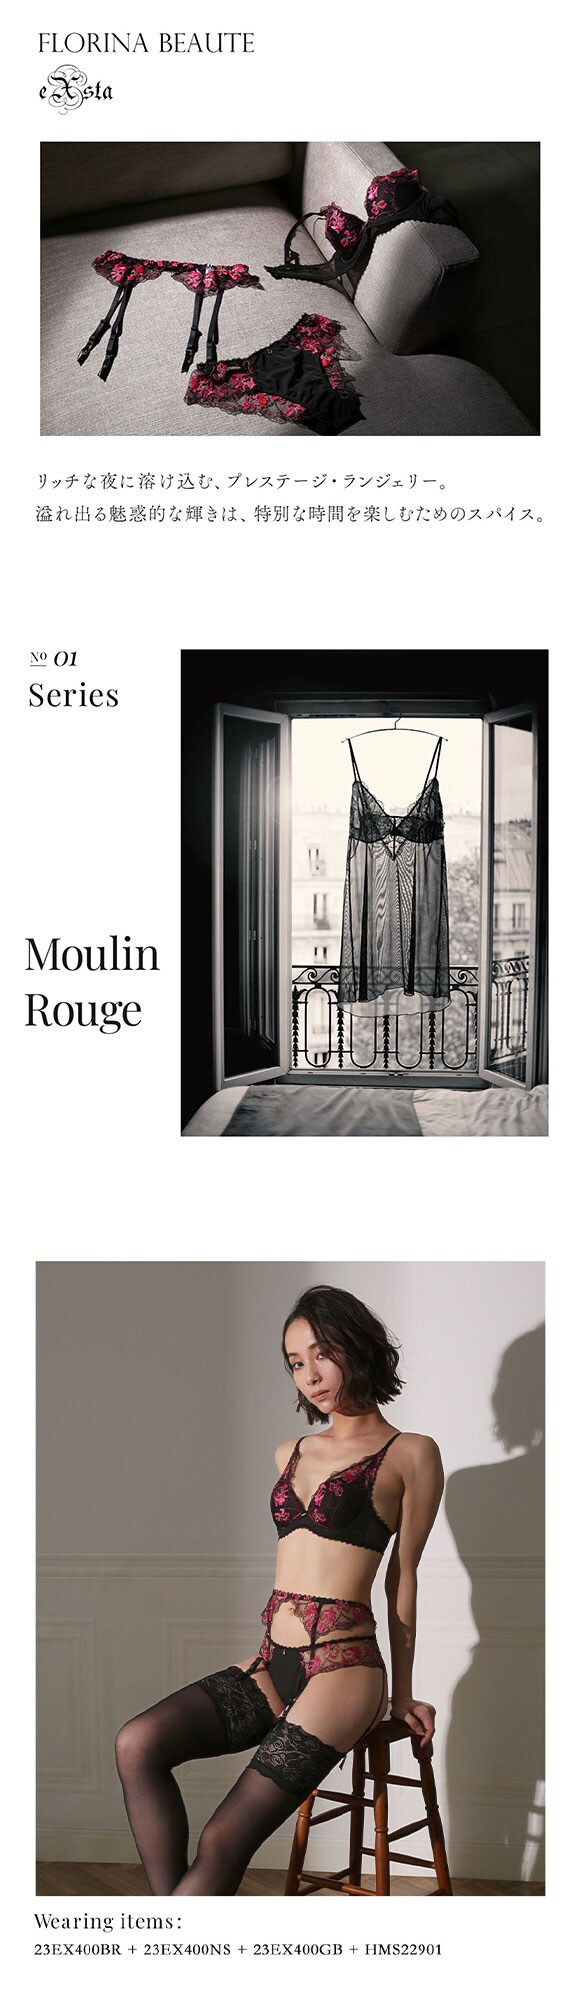 フロリナヴォーテ Moulin Rouge ノーマルショーツ 総レース ML 単品 FLORINA BEAUTE eXsta ムランルージュ